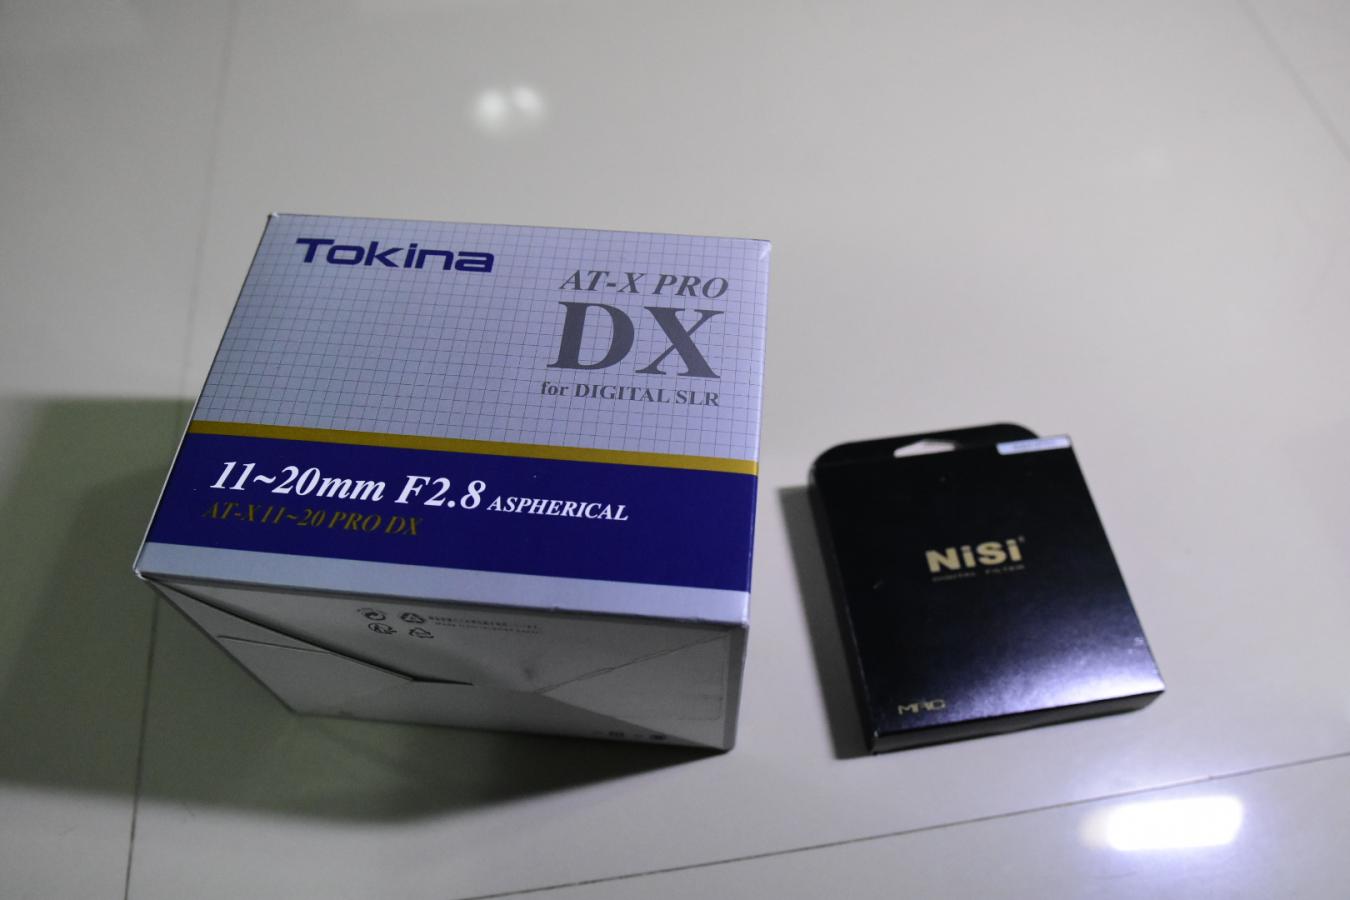 เลนส์ tokina 11-20 f2.8 at-x pro dx for nikon พร้อมฟิลเตอร์